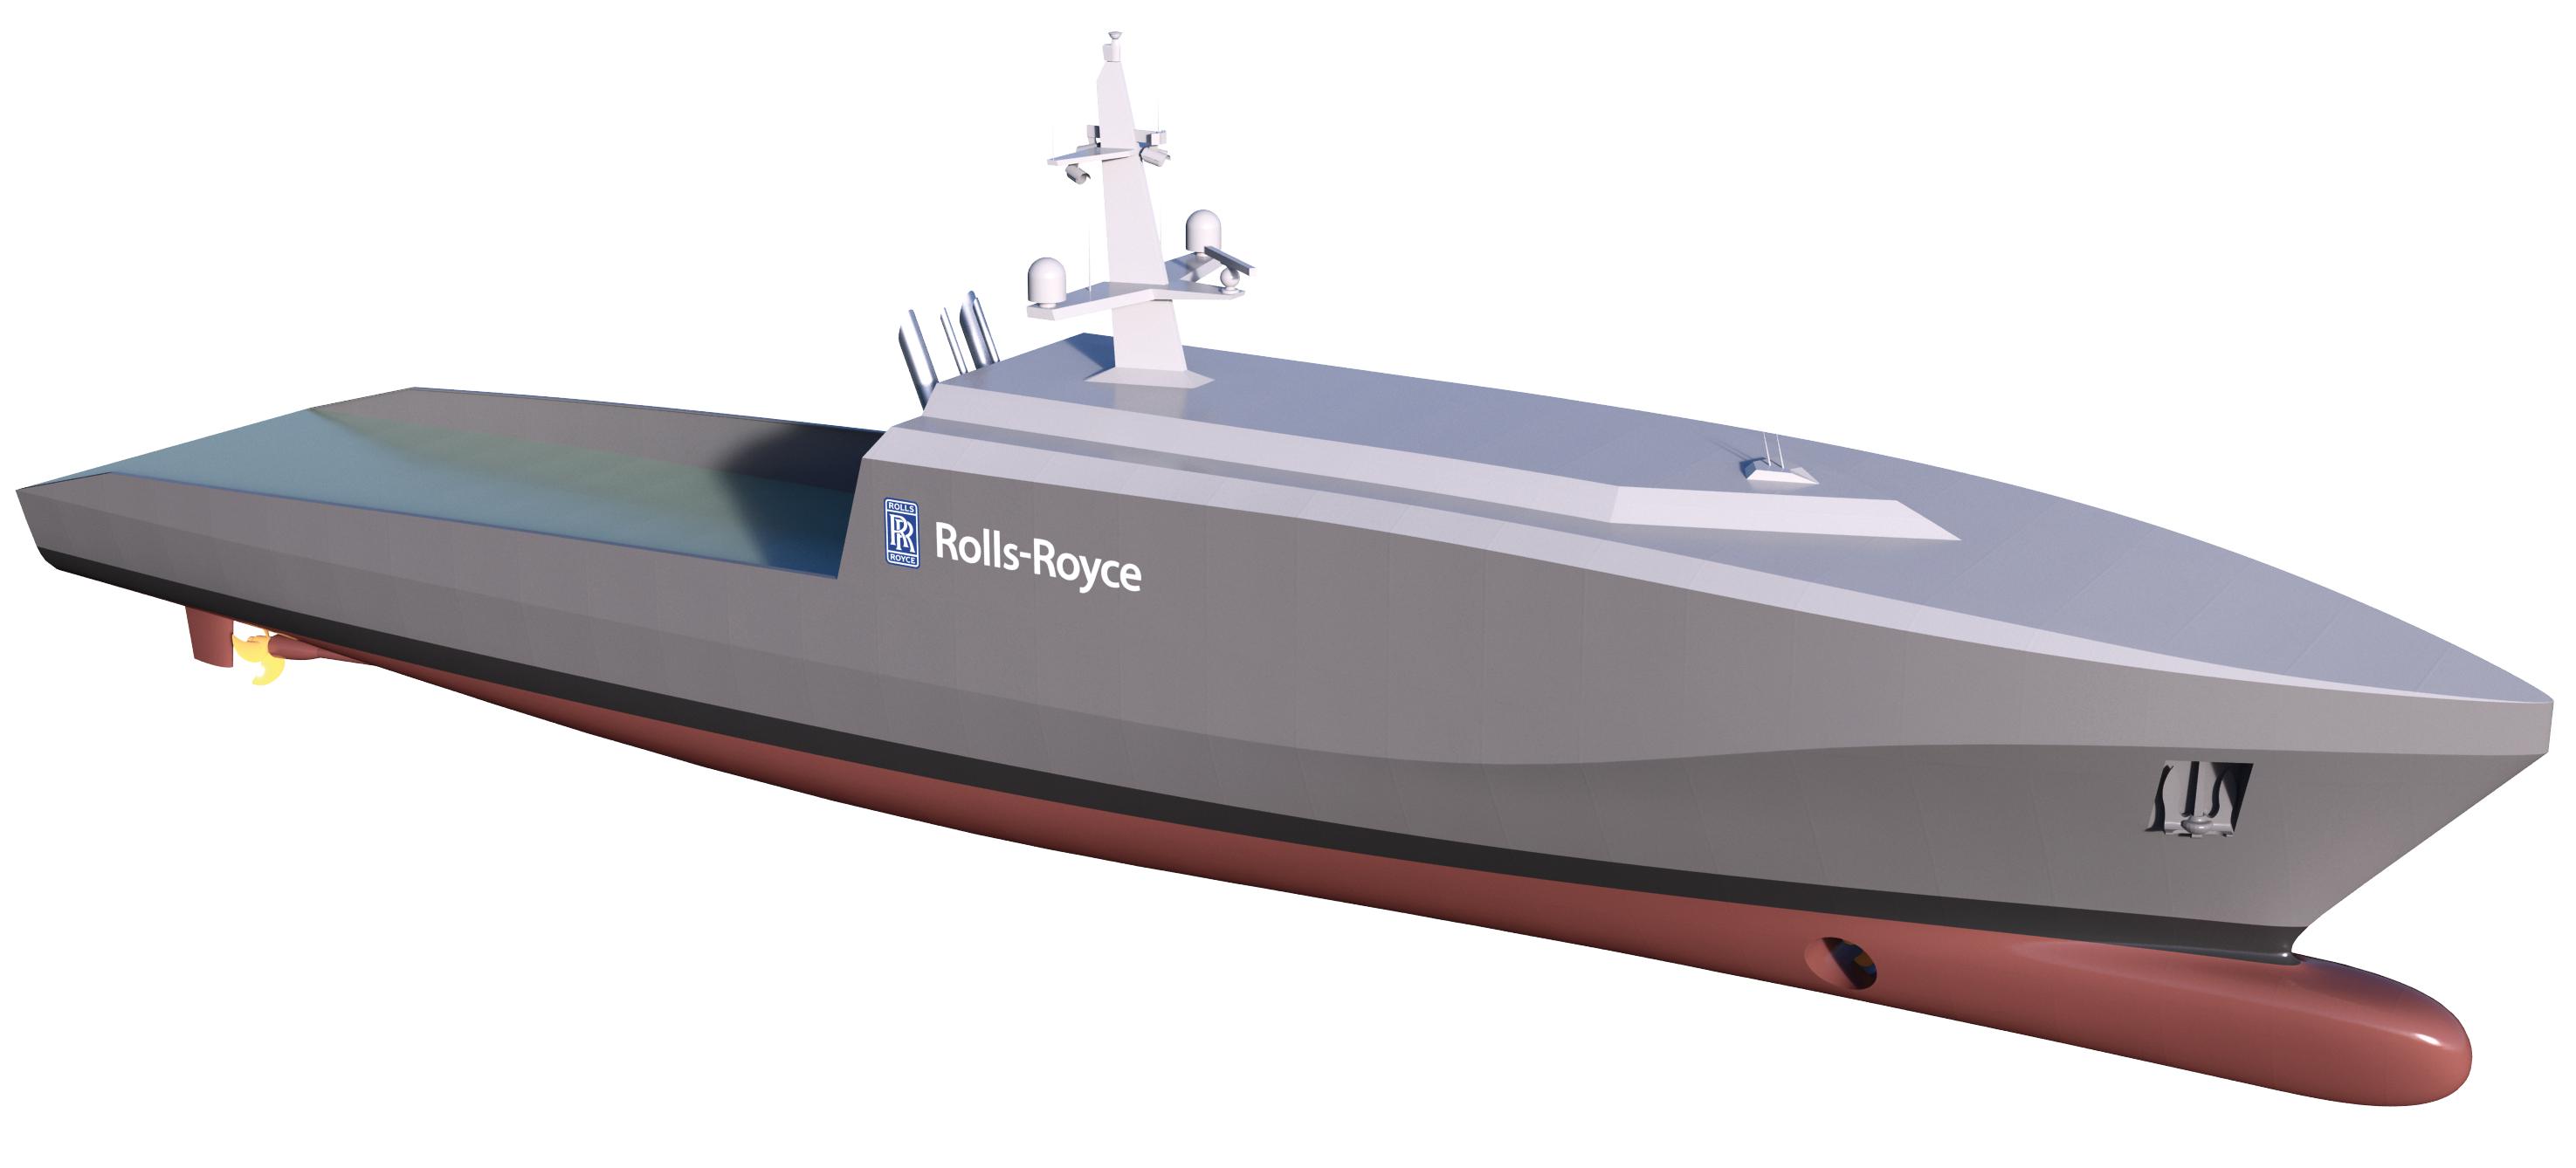 Rolls-Royce planning autonomous naval ship for patrol, surveillance ...